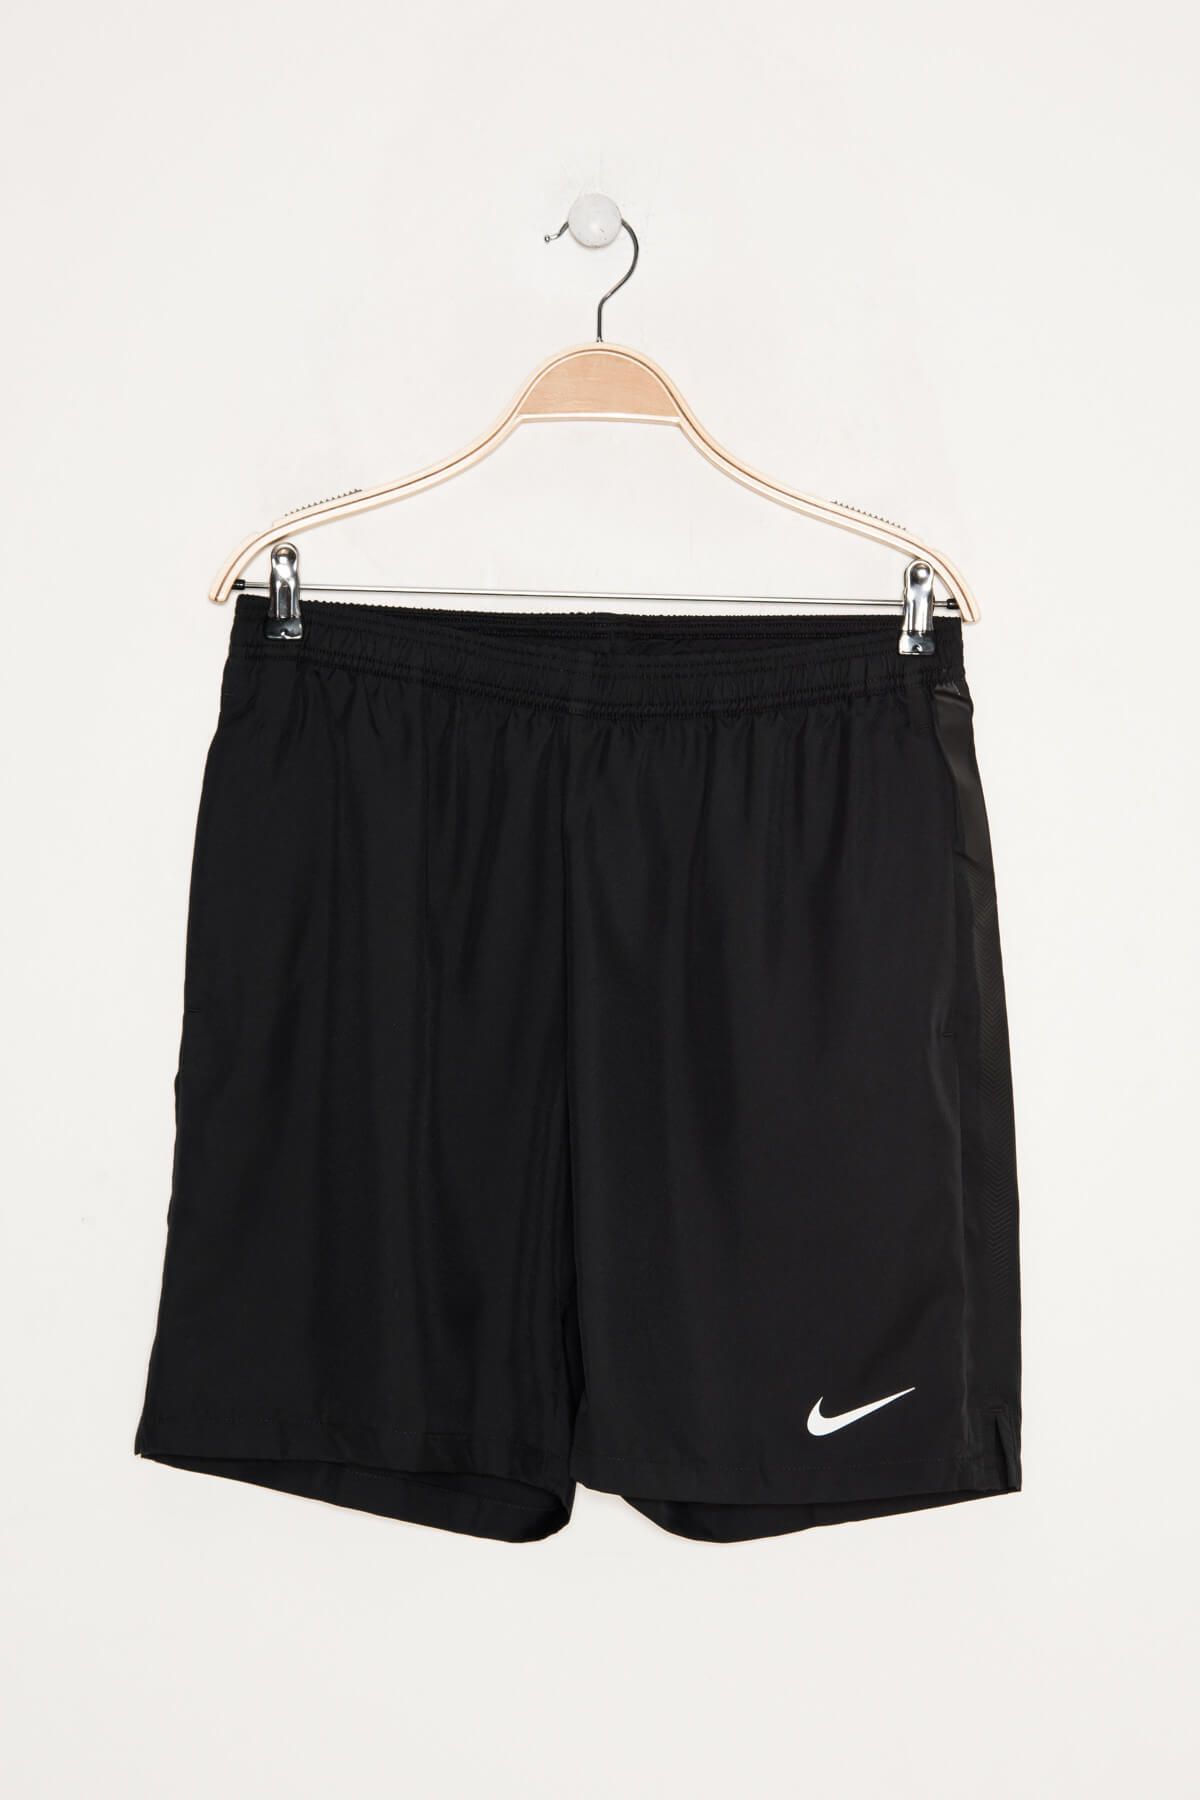 Nike Erkek Şort - Dry Short 9In - 830821-015